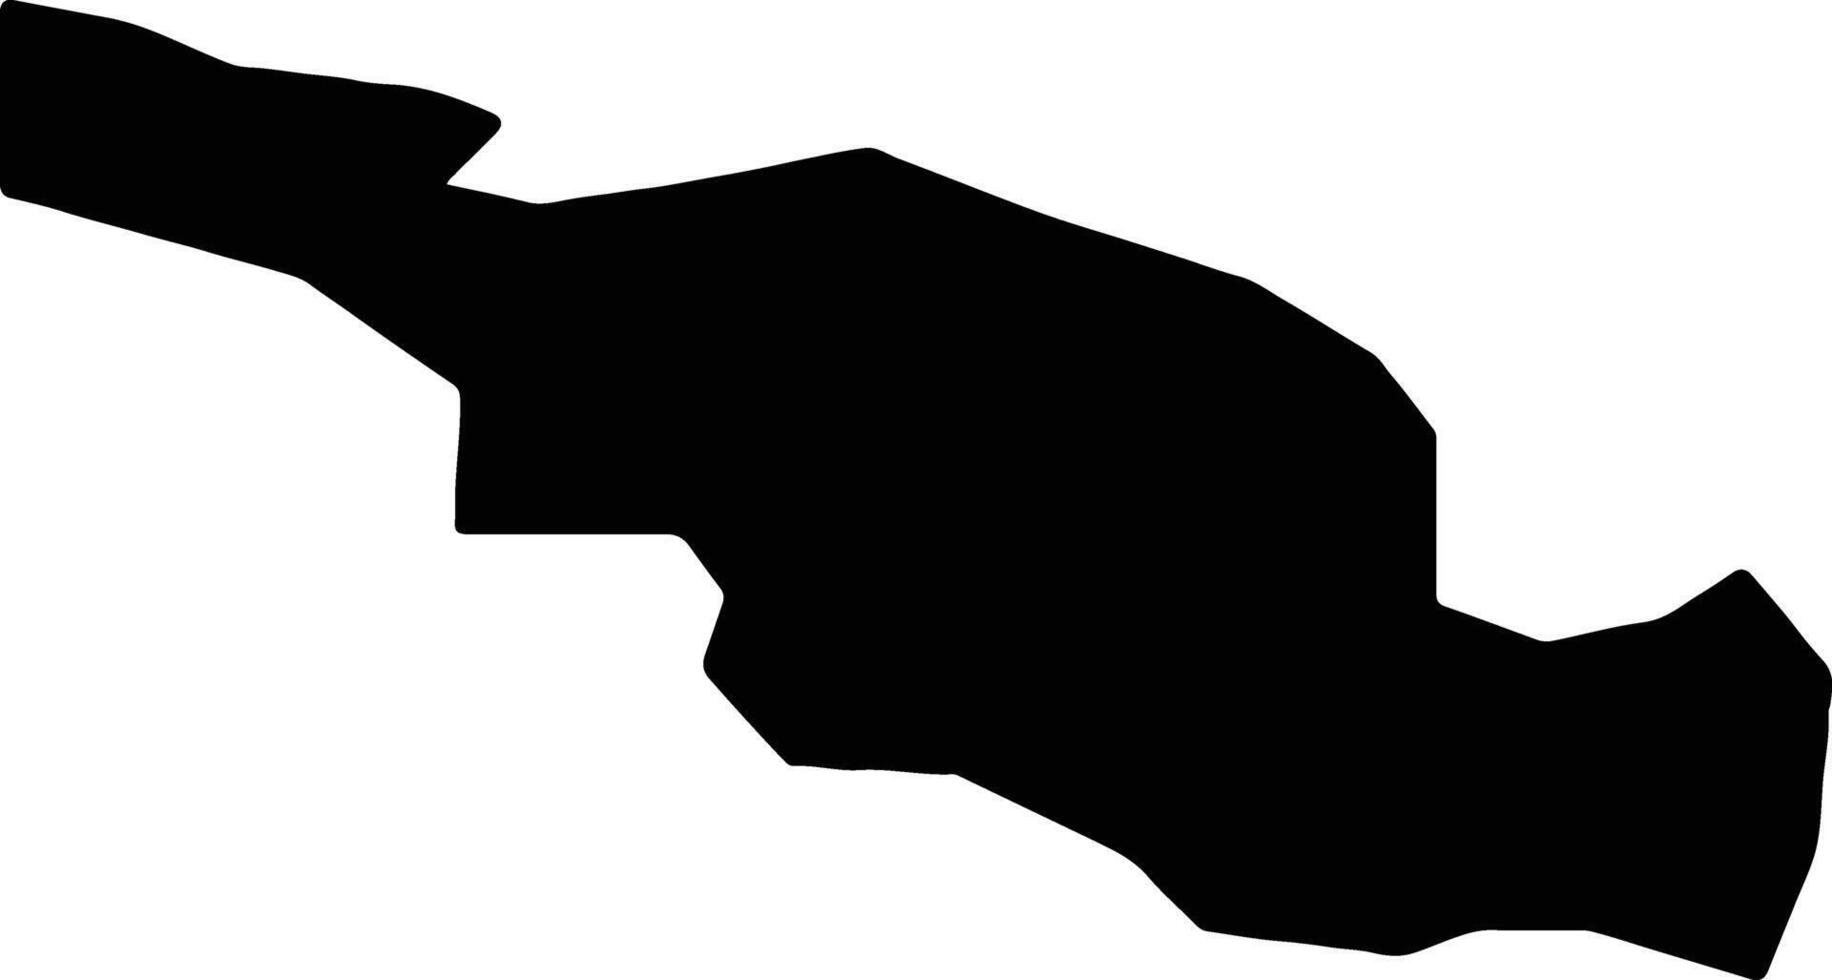 cesu Lettonia silhouette carta geografica vettore